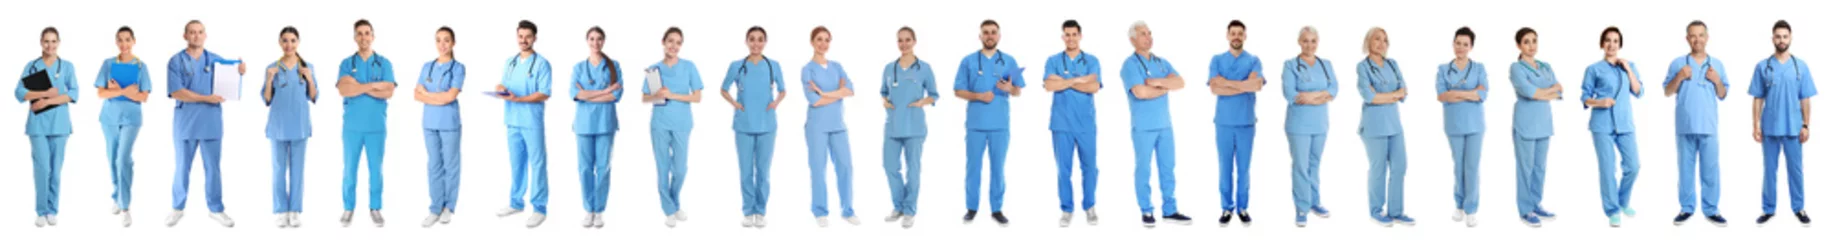 Fototapete Artz Collage von Menschen in Uniformen auf weißem Hintergrund. Medezinische Angestellte